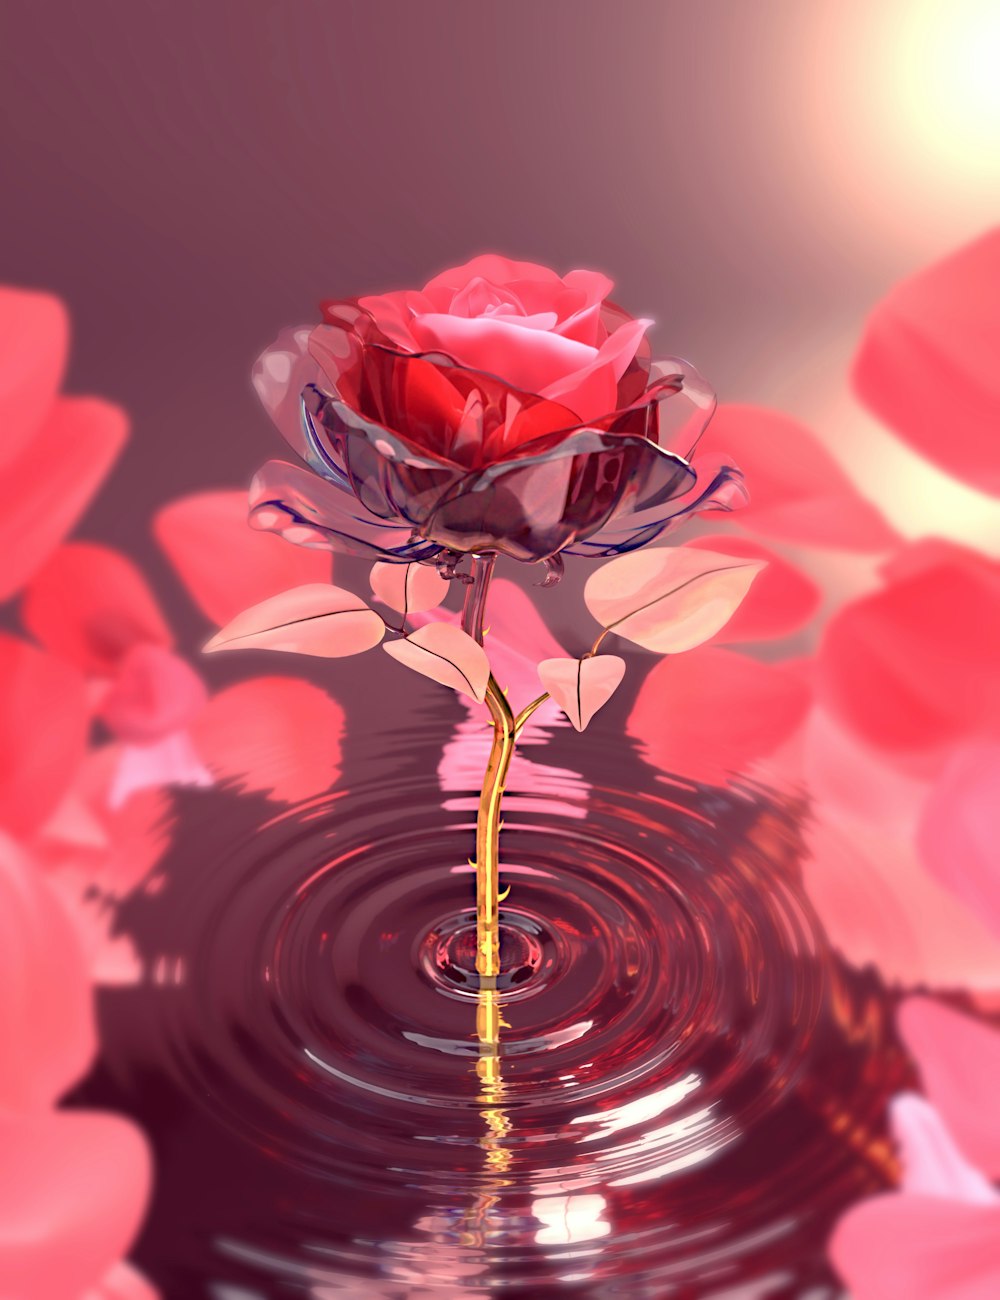 Una rosa rossa che galleggia sulla cima di uno specchio d'acqua